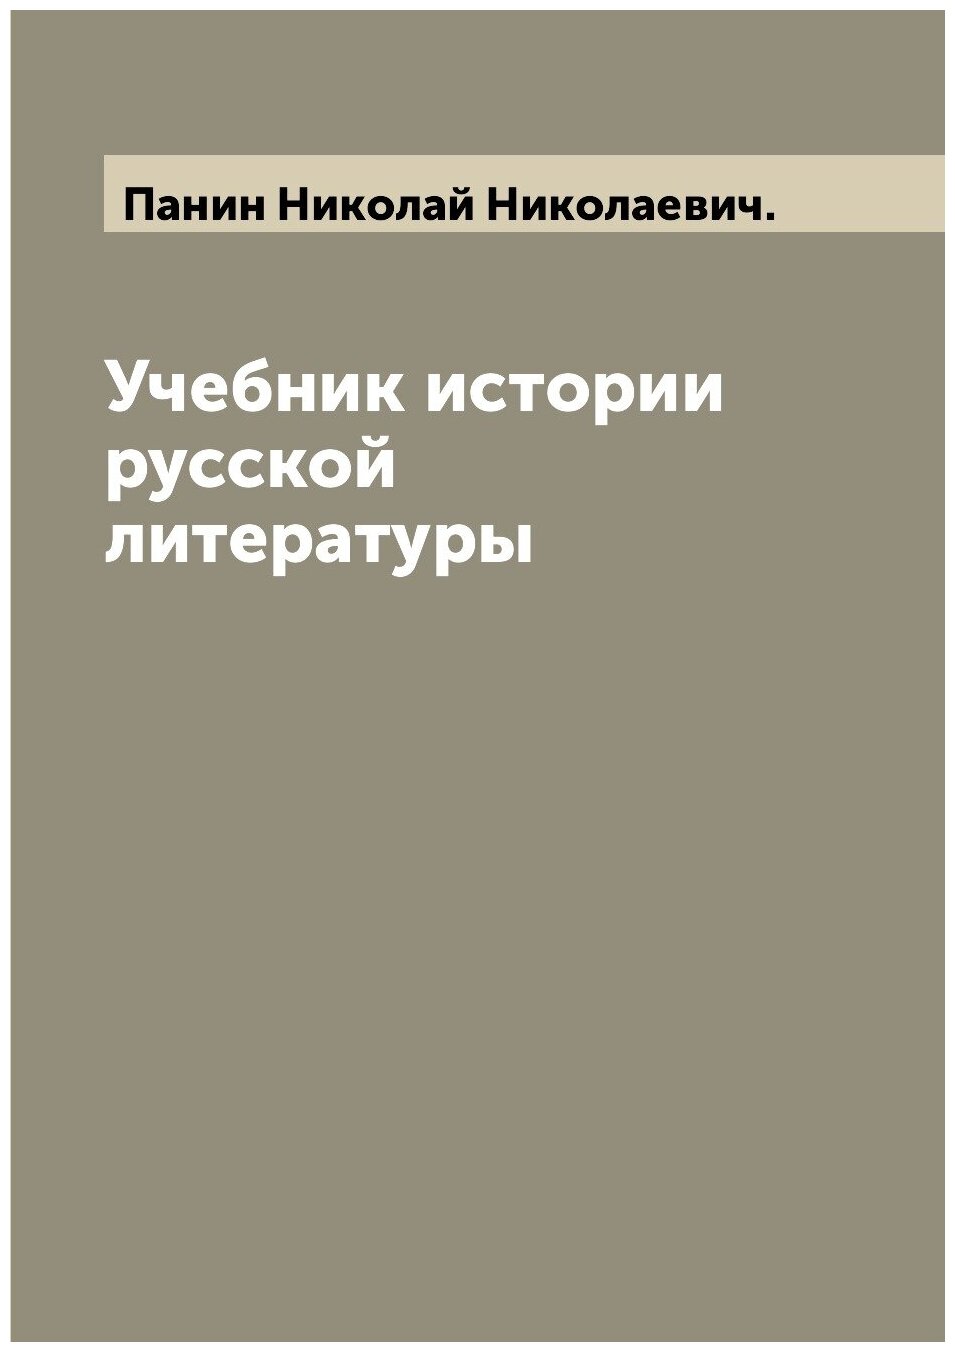 Учебник истории русской литературы